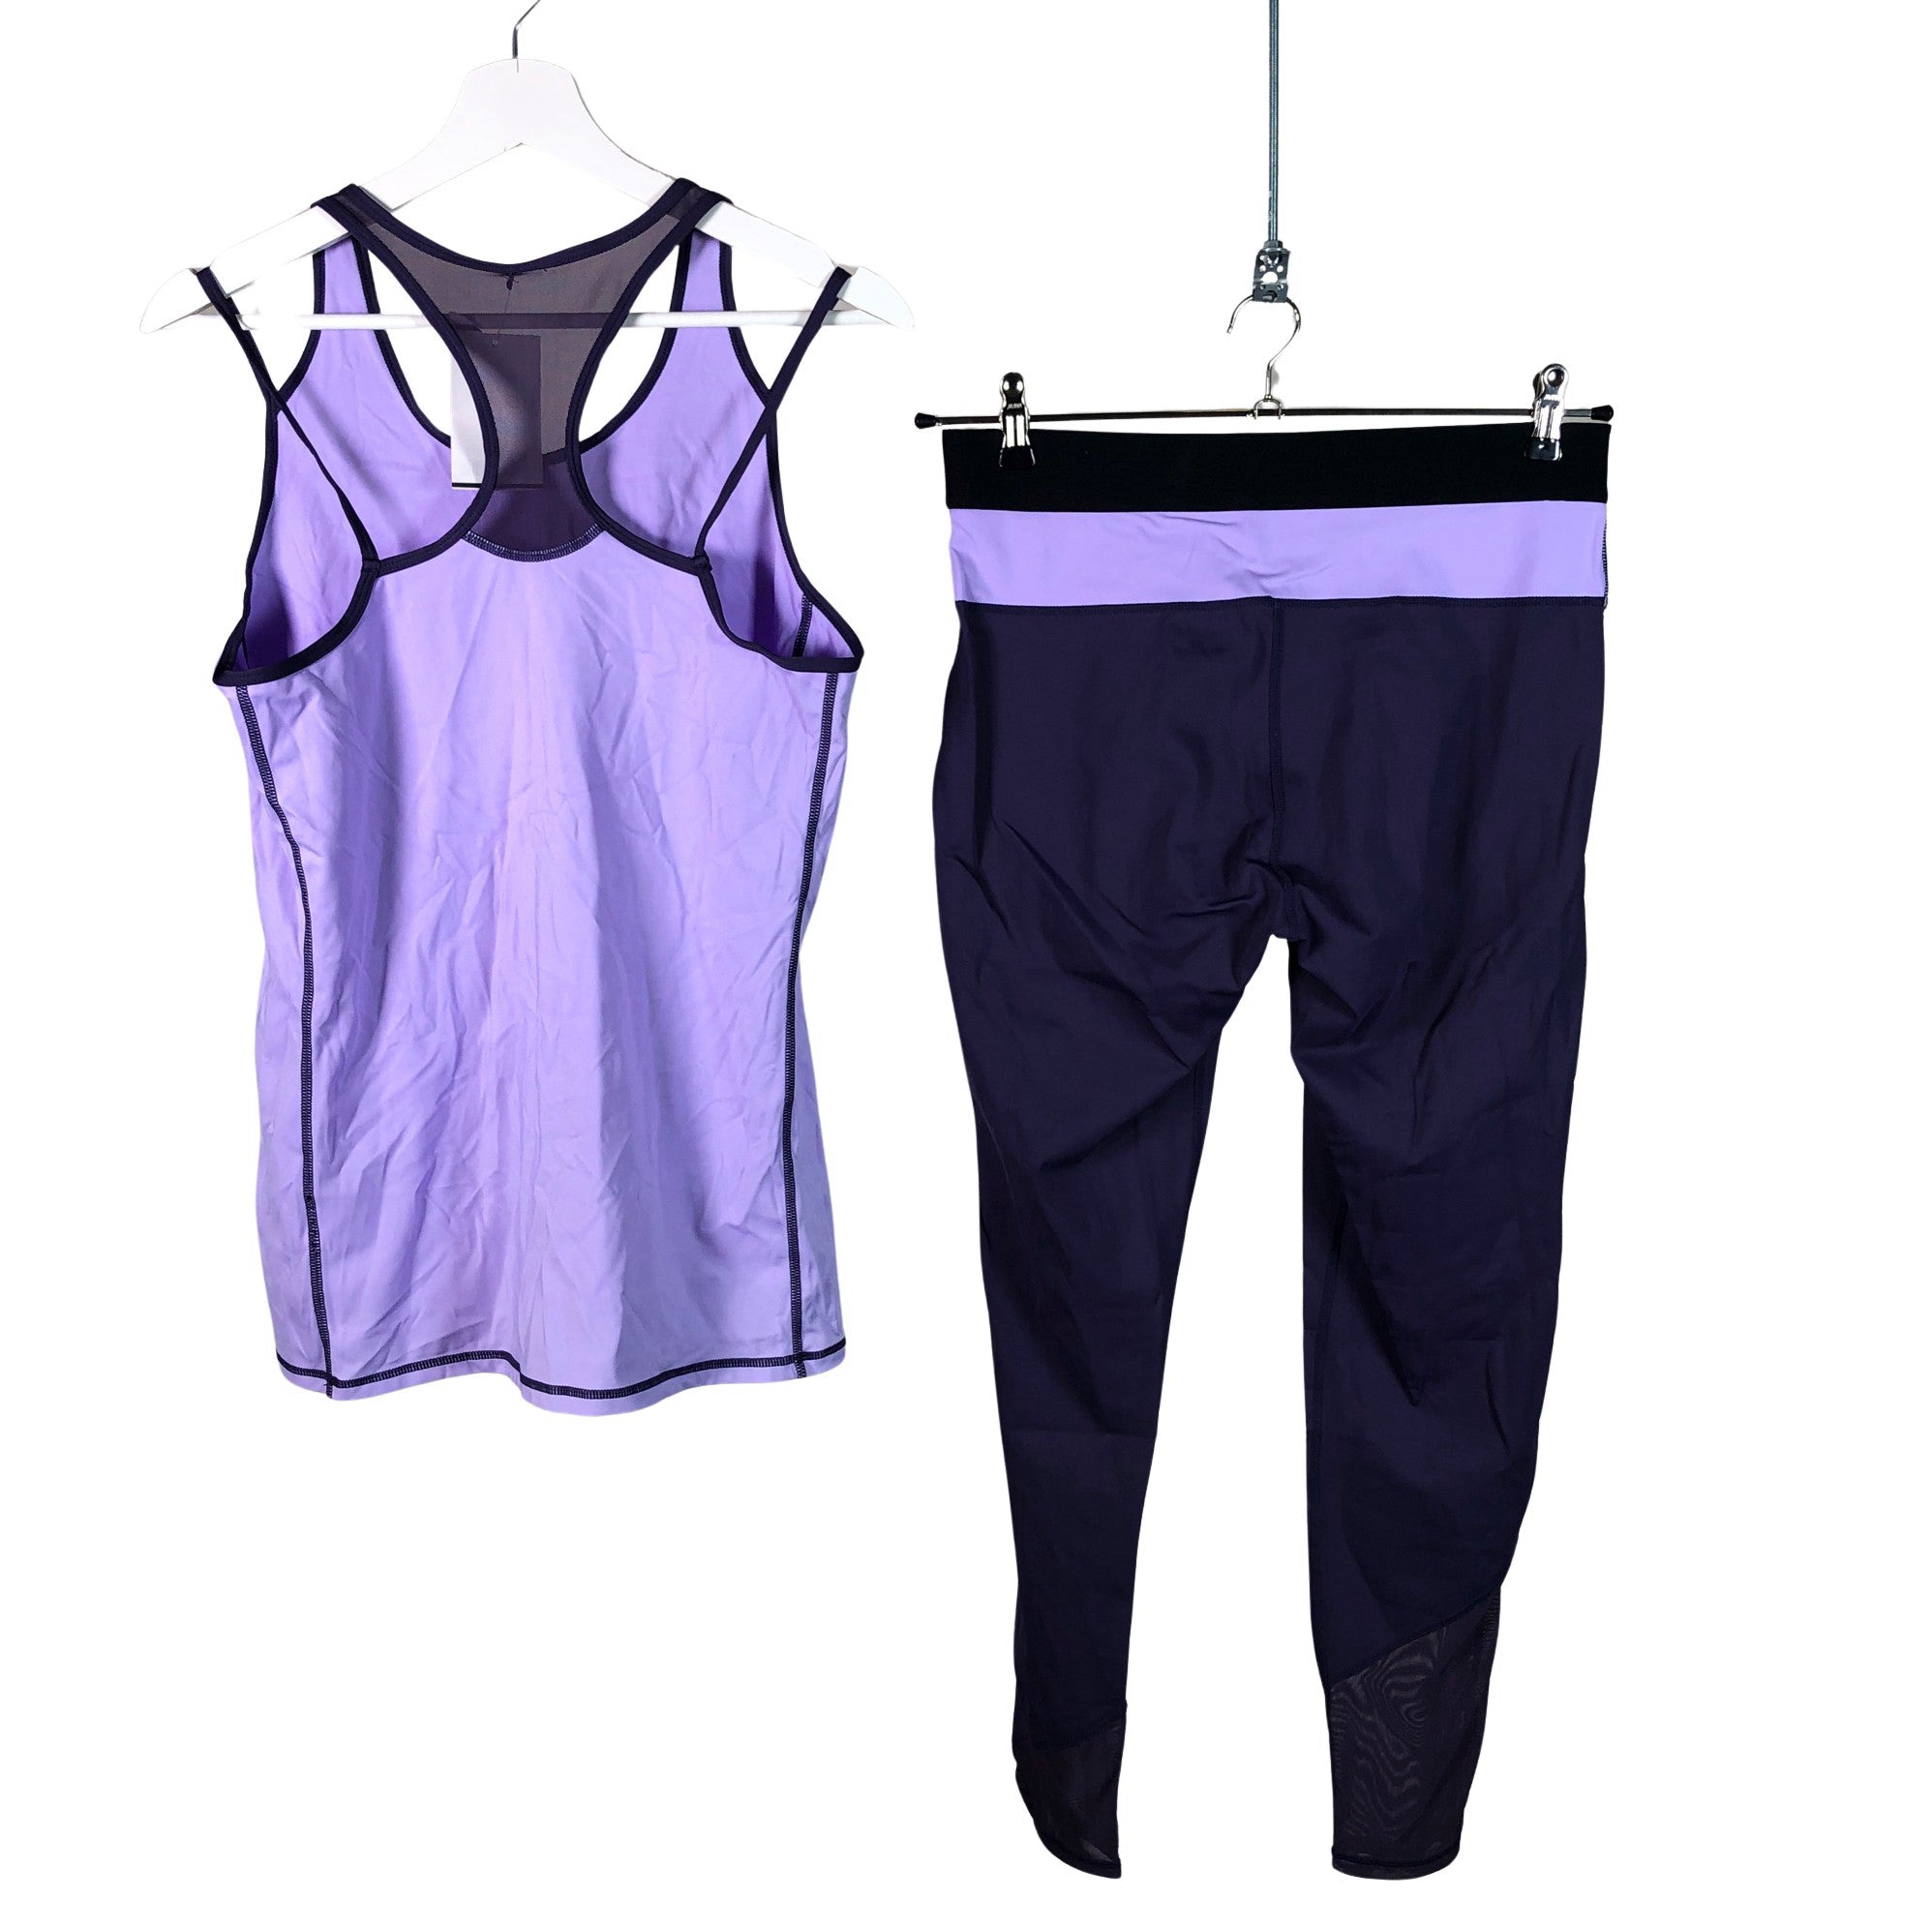 Women's Avia Sports top, size 42 (Purple)